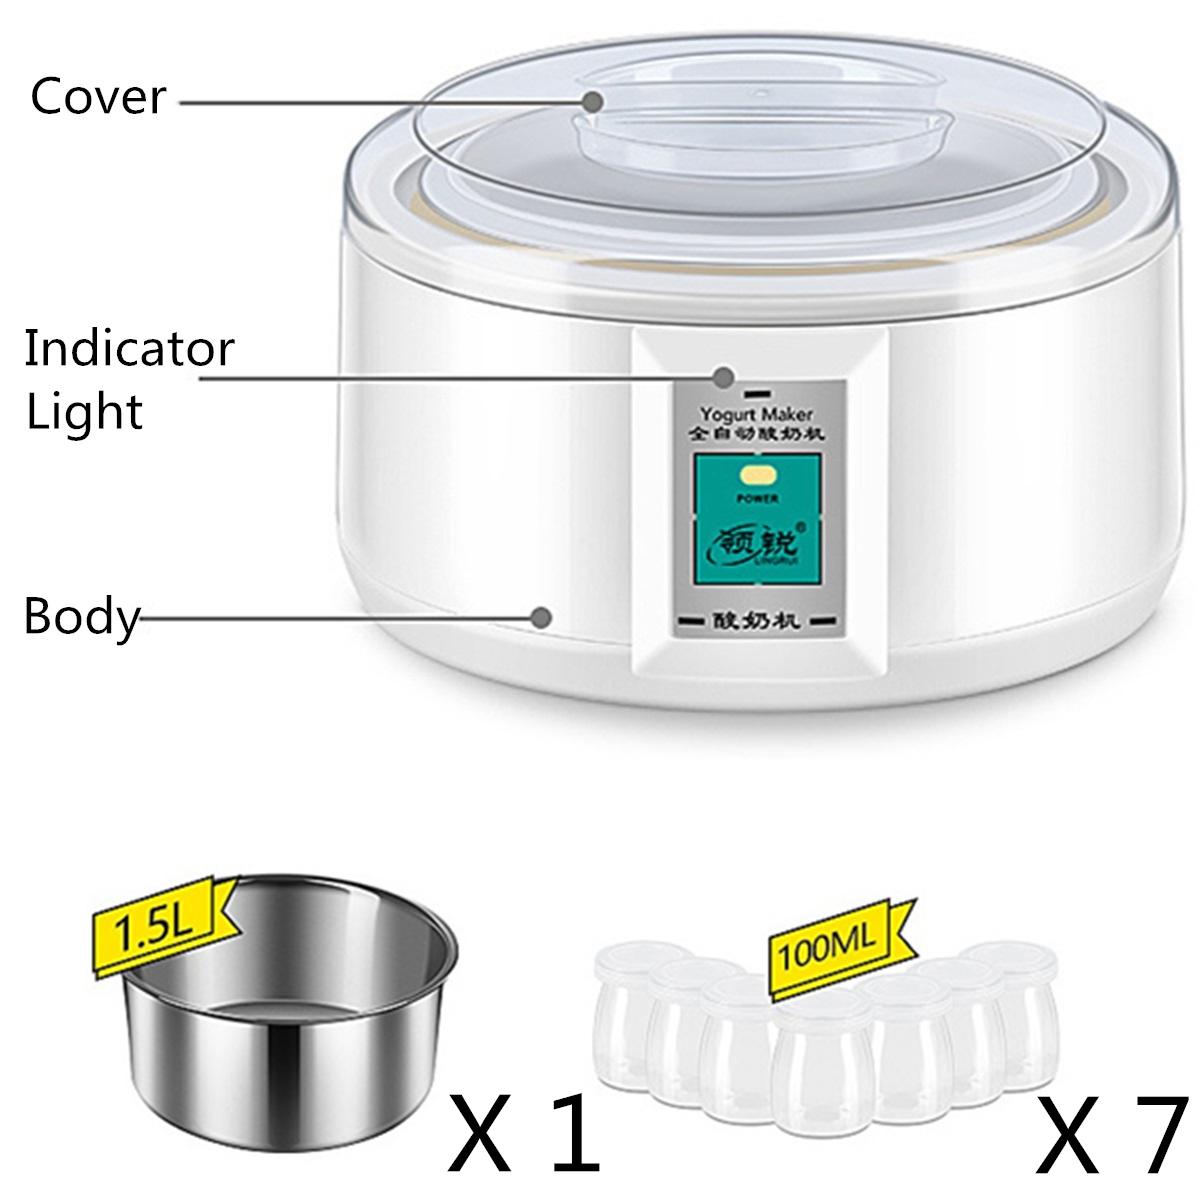 1.5l elektrisk yoghurt maker yoghurt diy værktøj køkken apparater automatisk yoghurt maker med 7 krukker liner materiale rustfrit stål